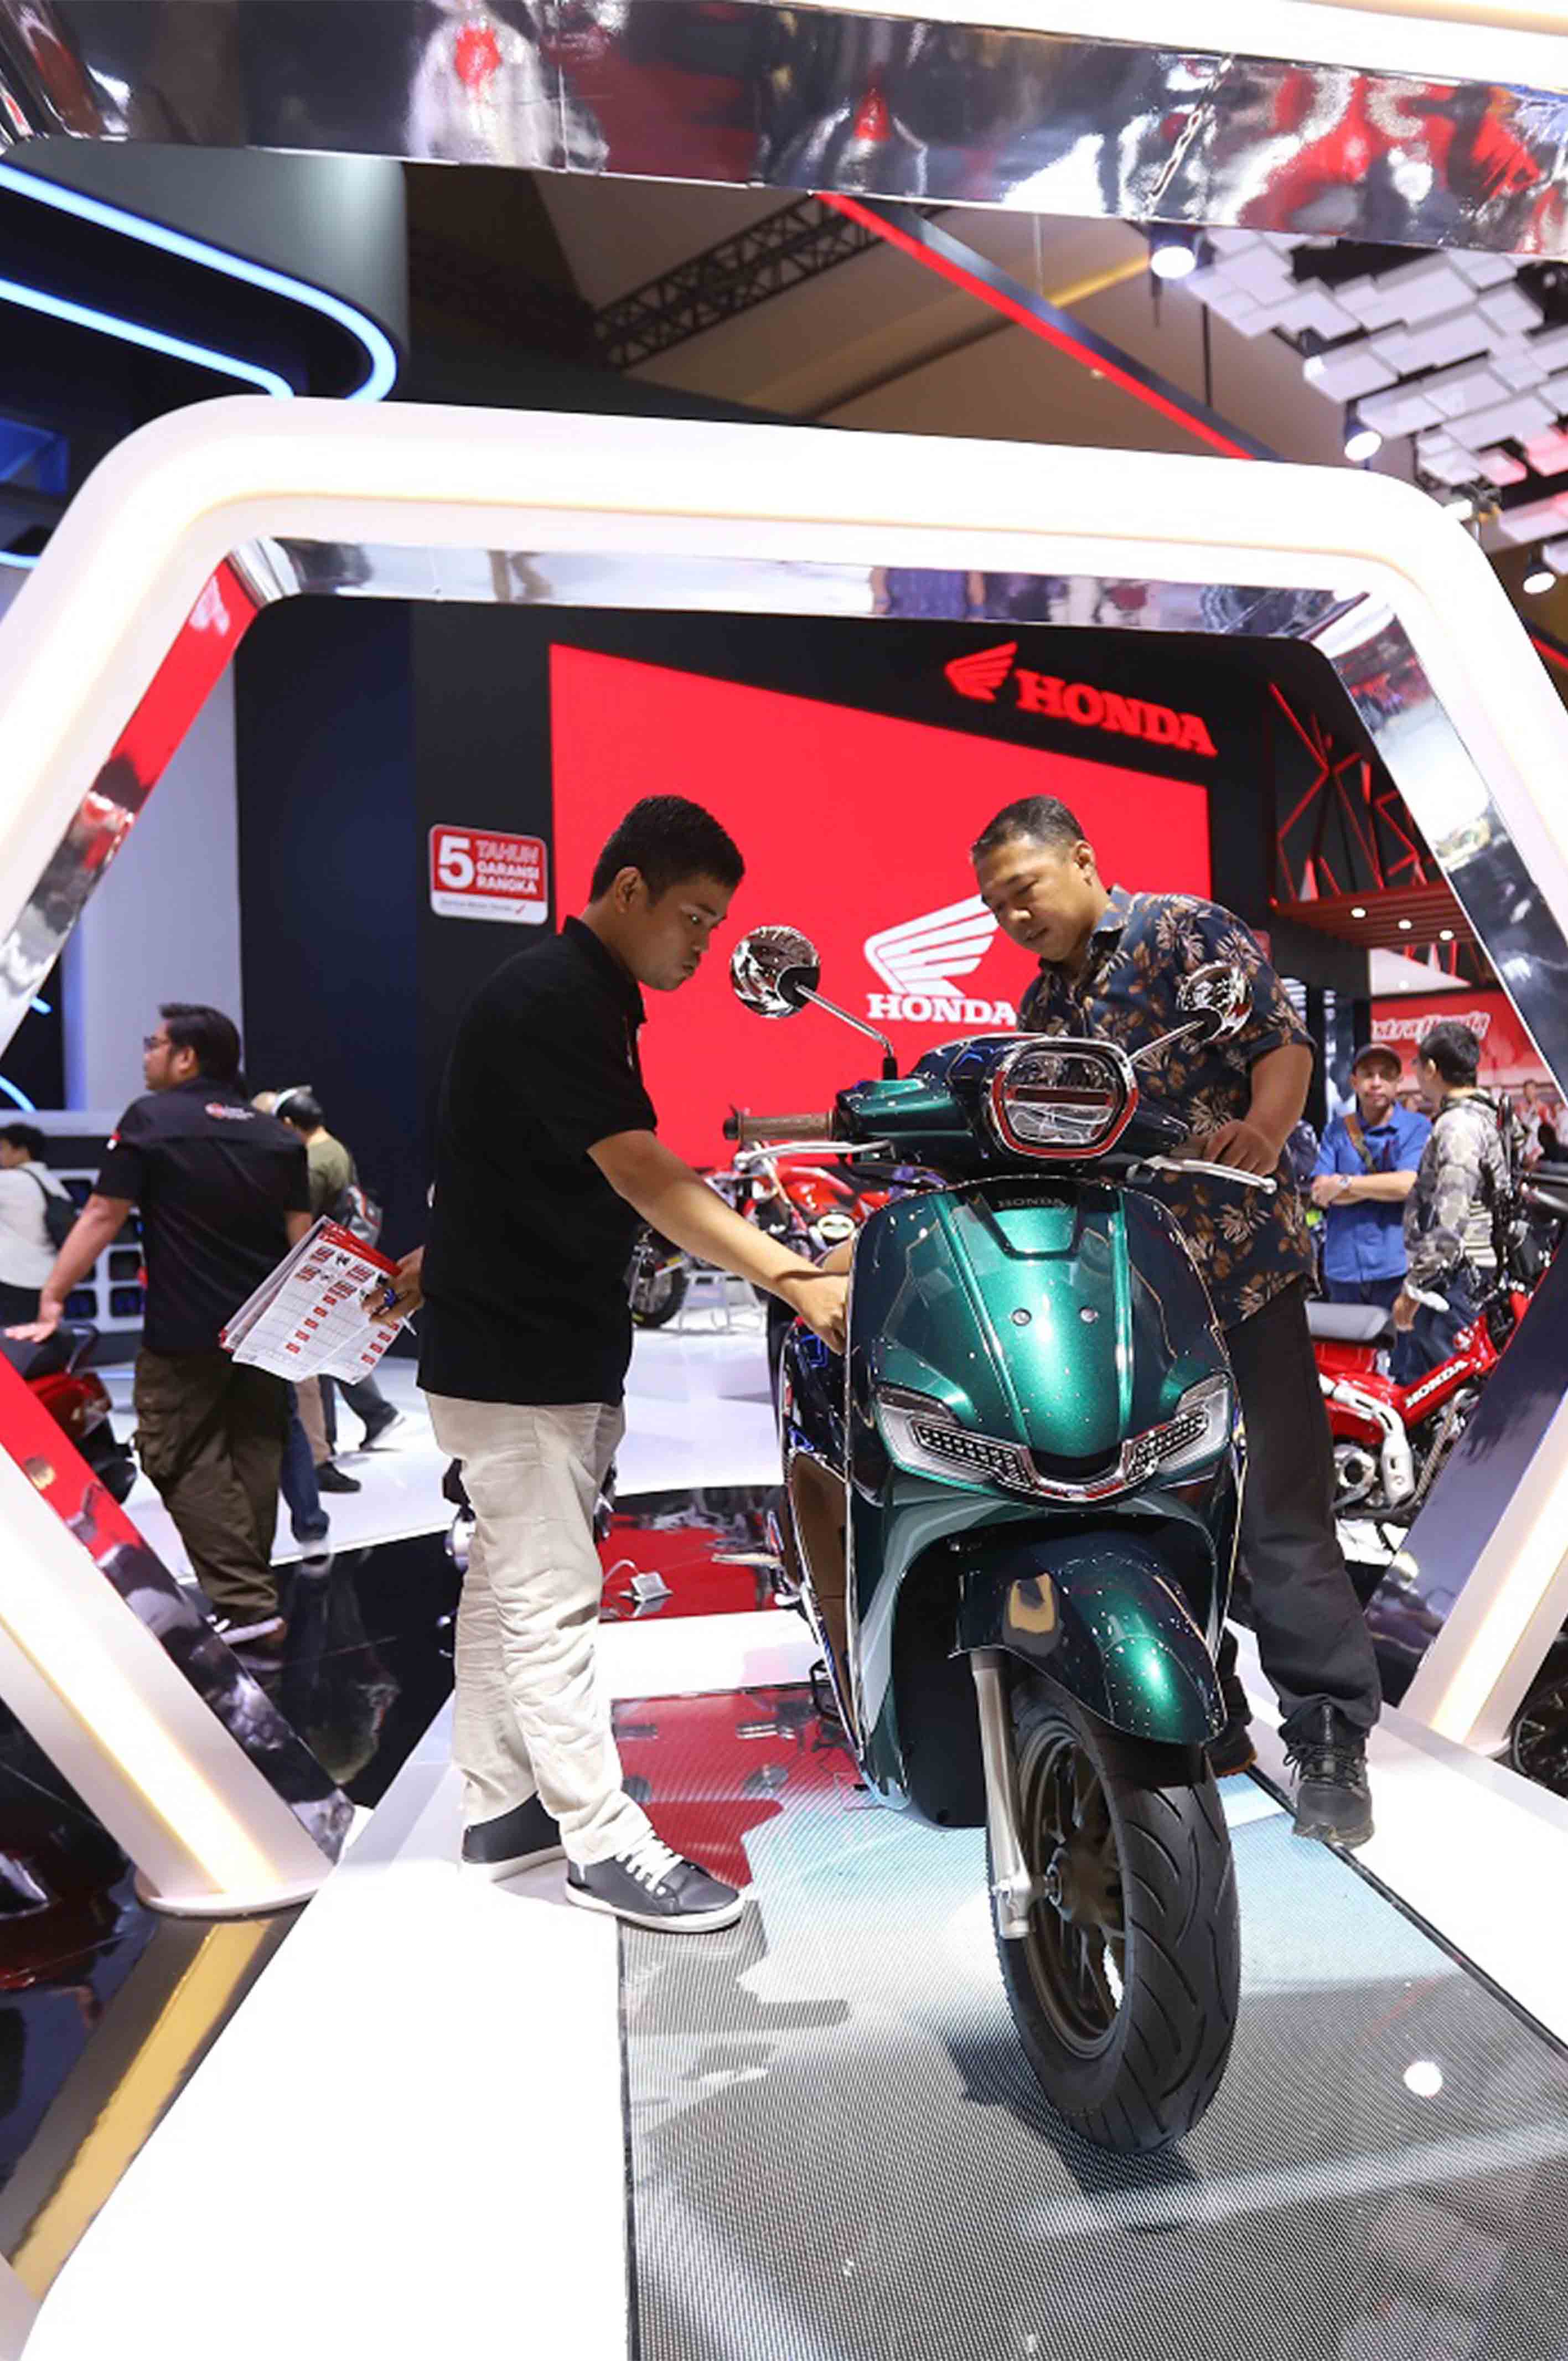 Masih memimpin pasar, Honda optimistis penjualan sepeda motor membaik